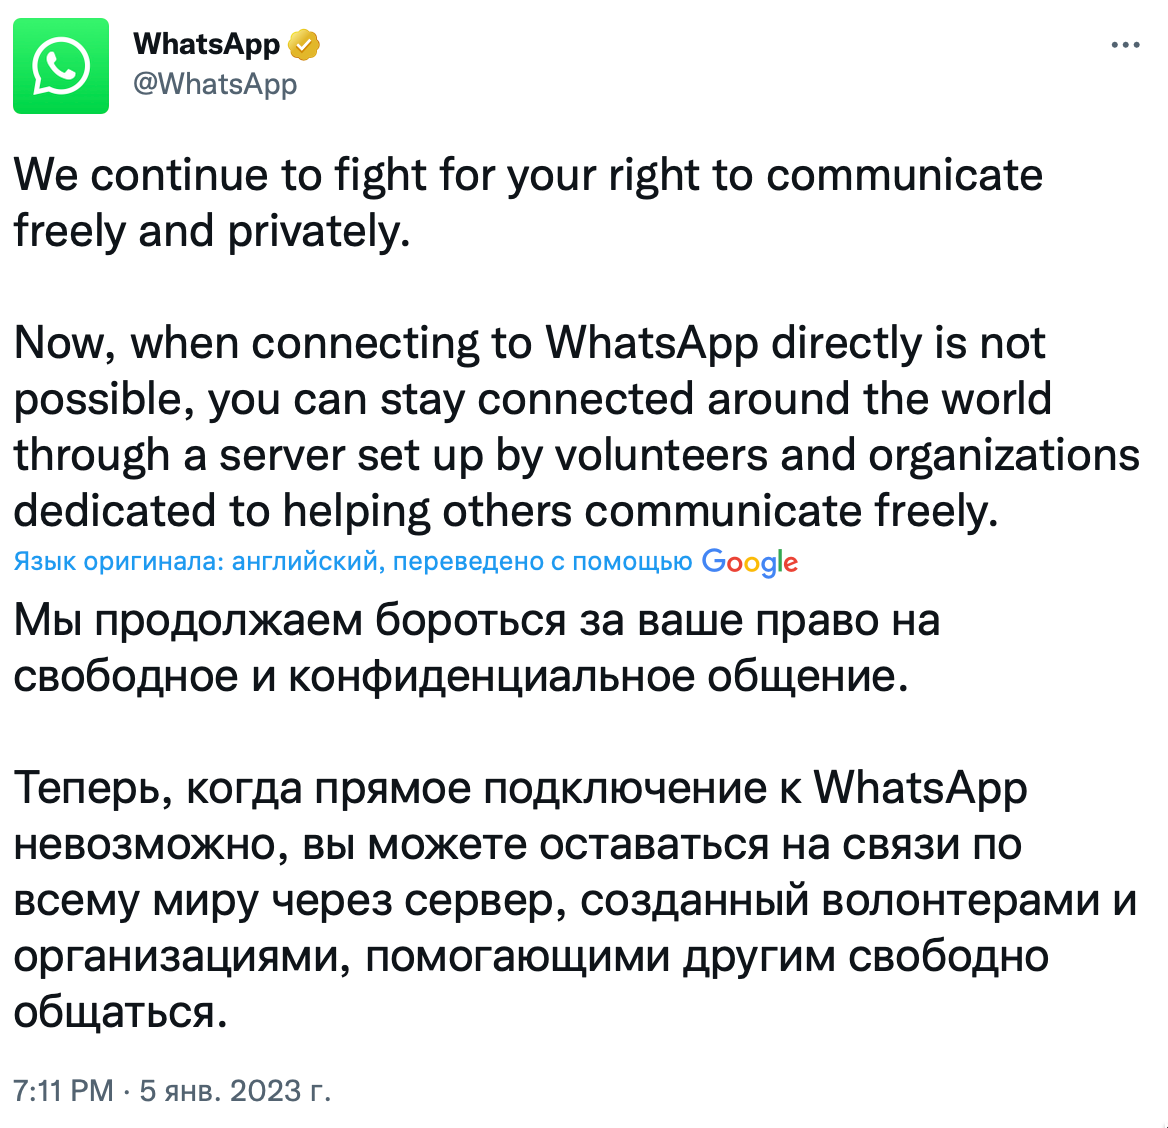 Как обойти блокировку телеграмма на андроид в казахстане фото 32